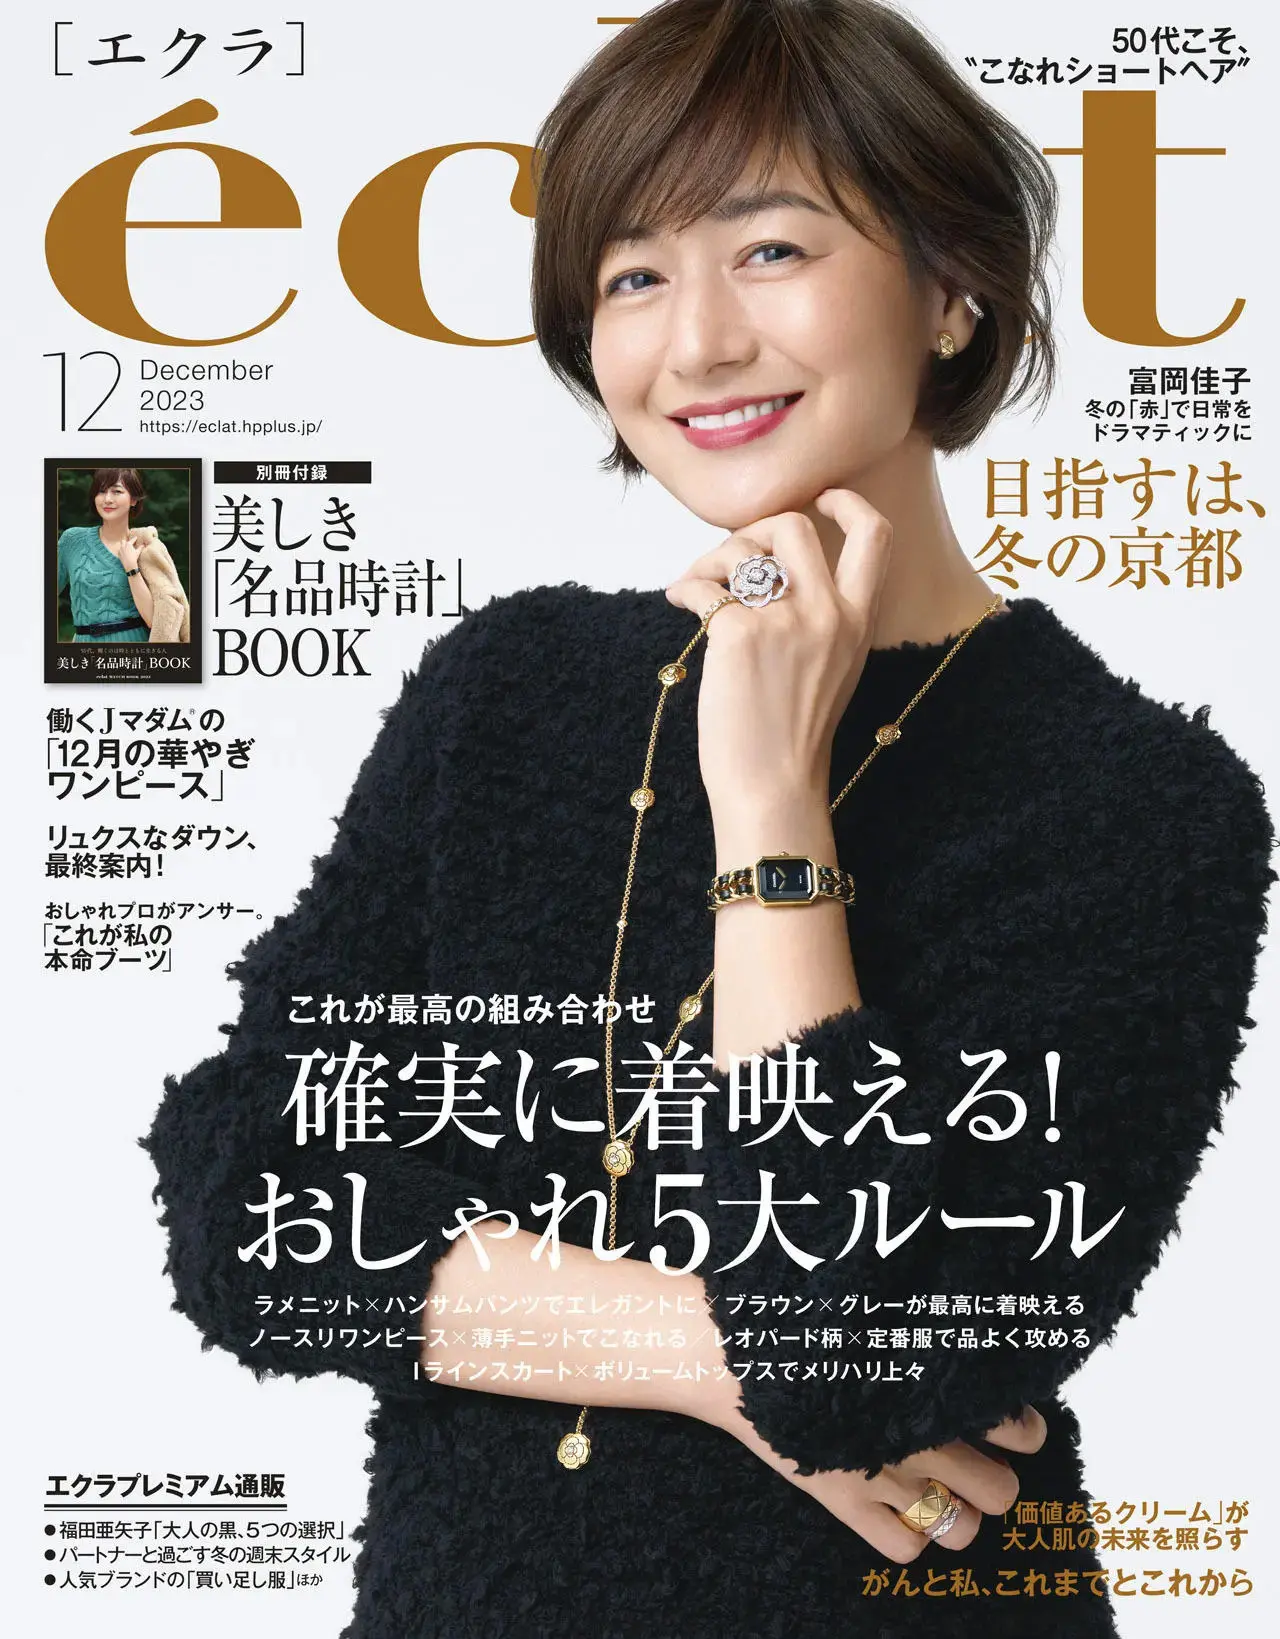 エクラ1月号表紙。カバーモデルは富岡佳子さん。